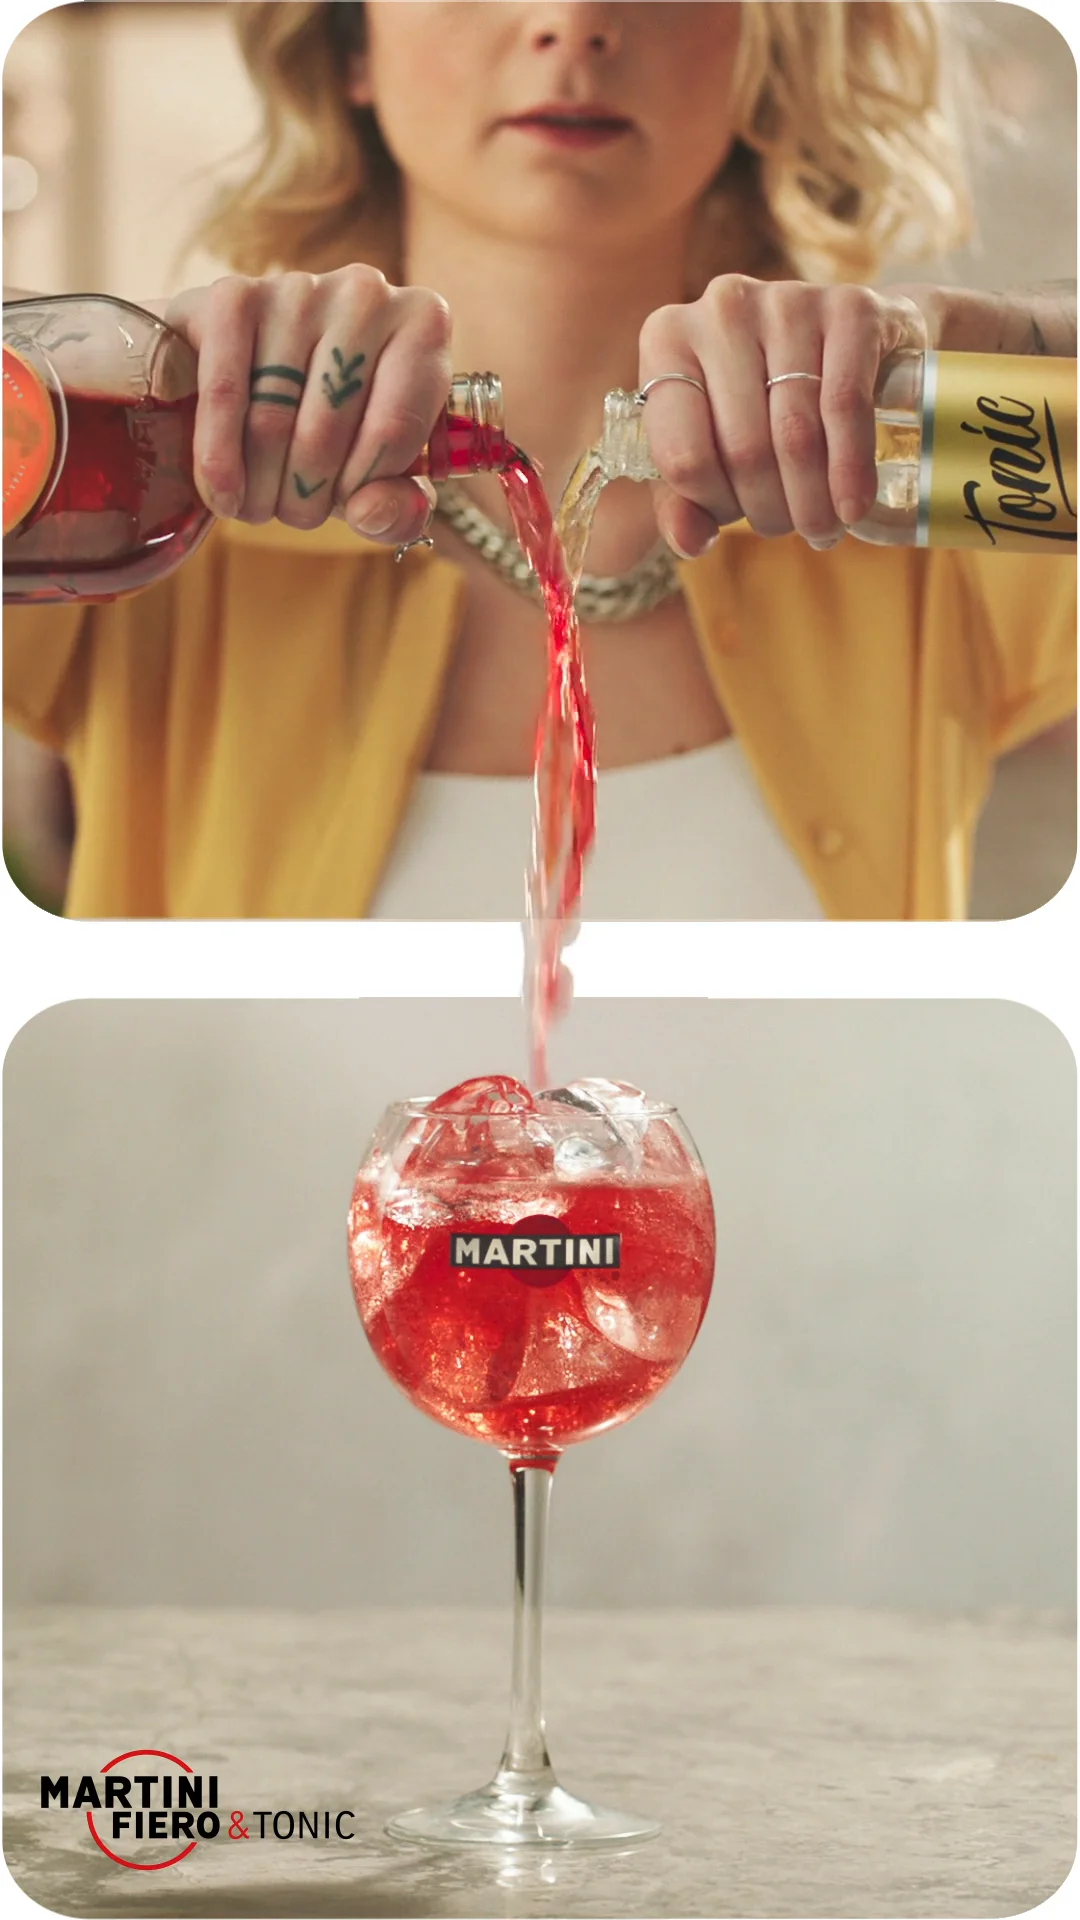 Martini Fiero - Pinterest on Vimeo \'Pour